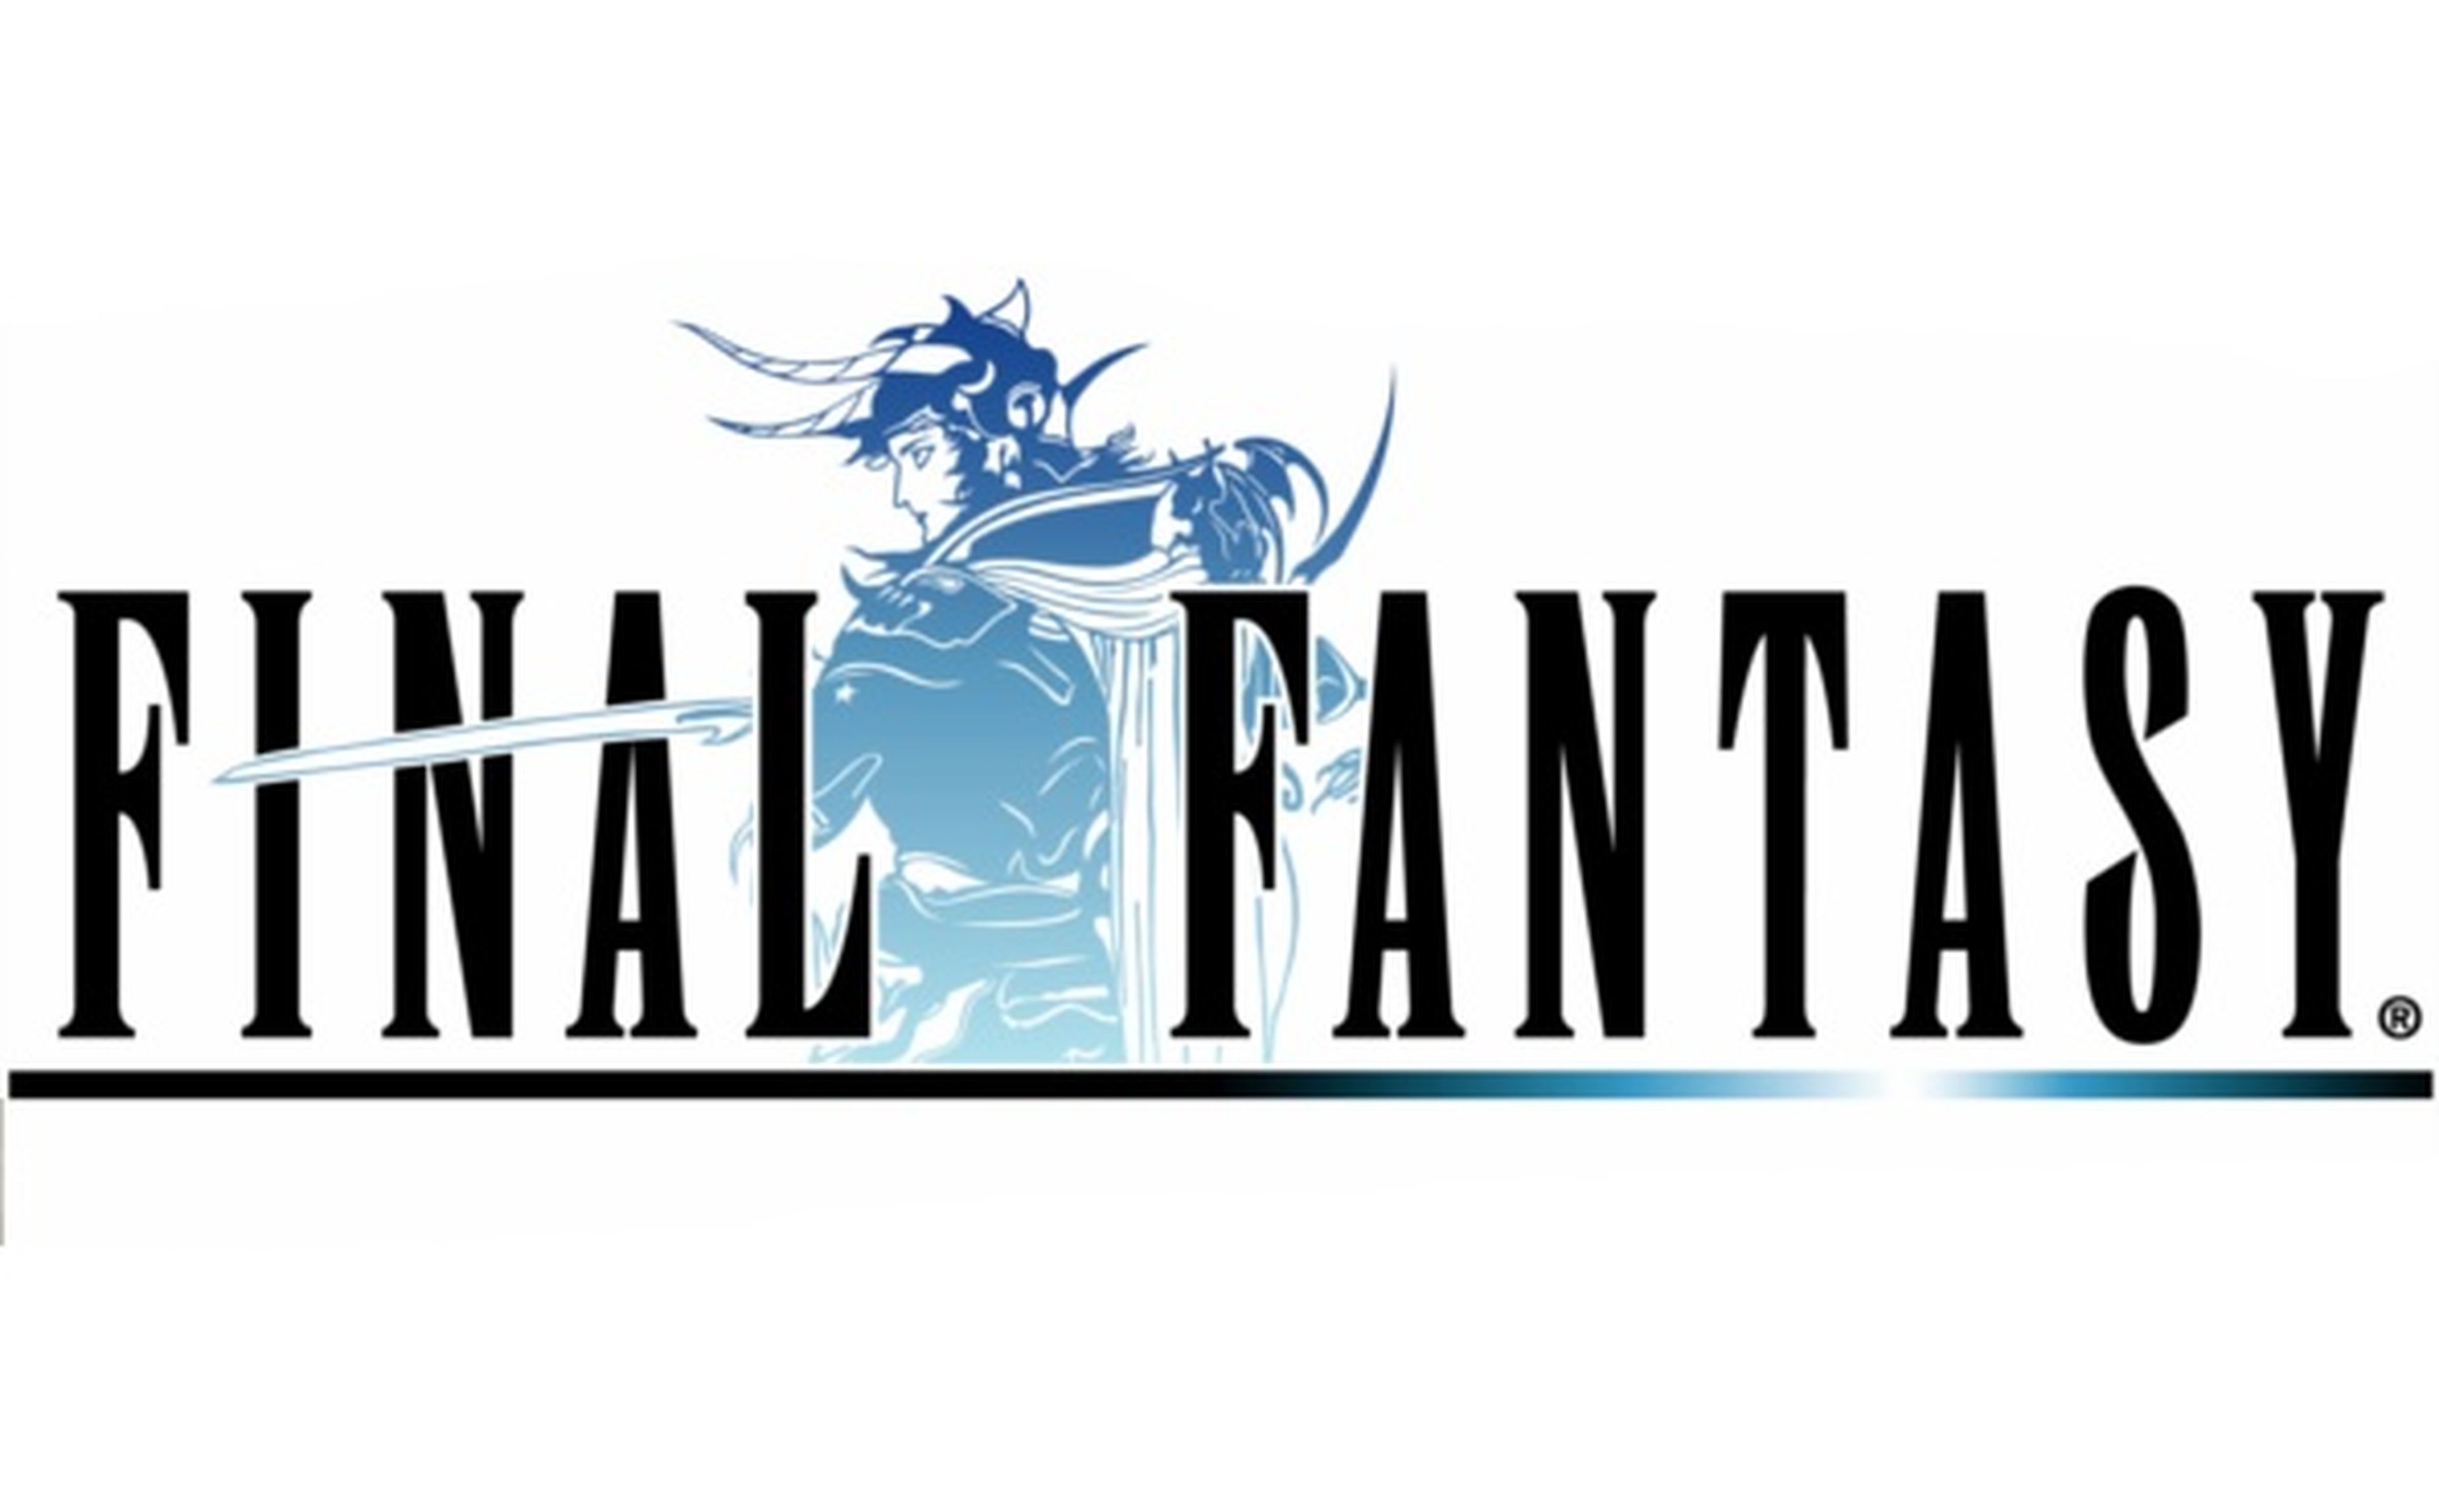 Se acercan los 25 años de Final Fantasy